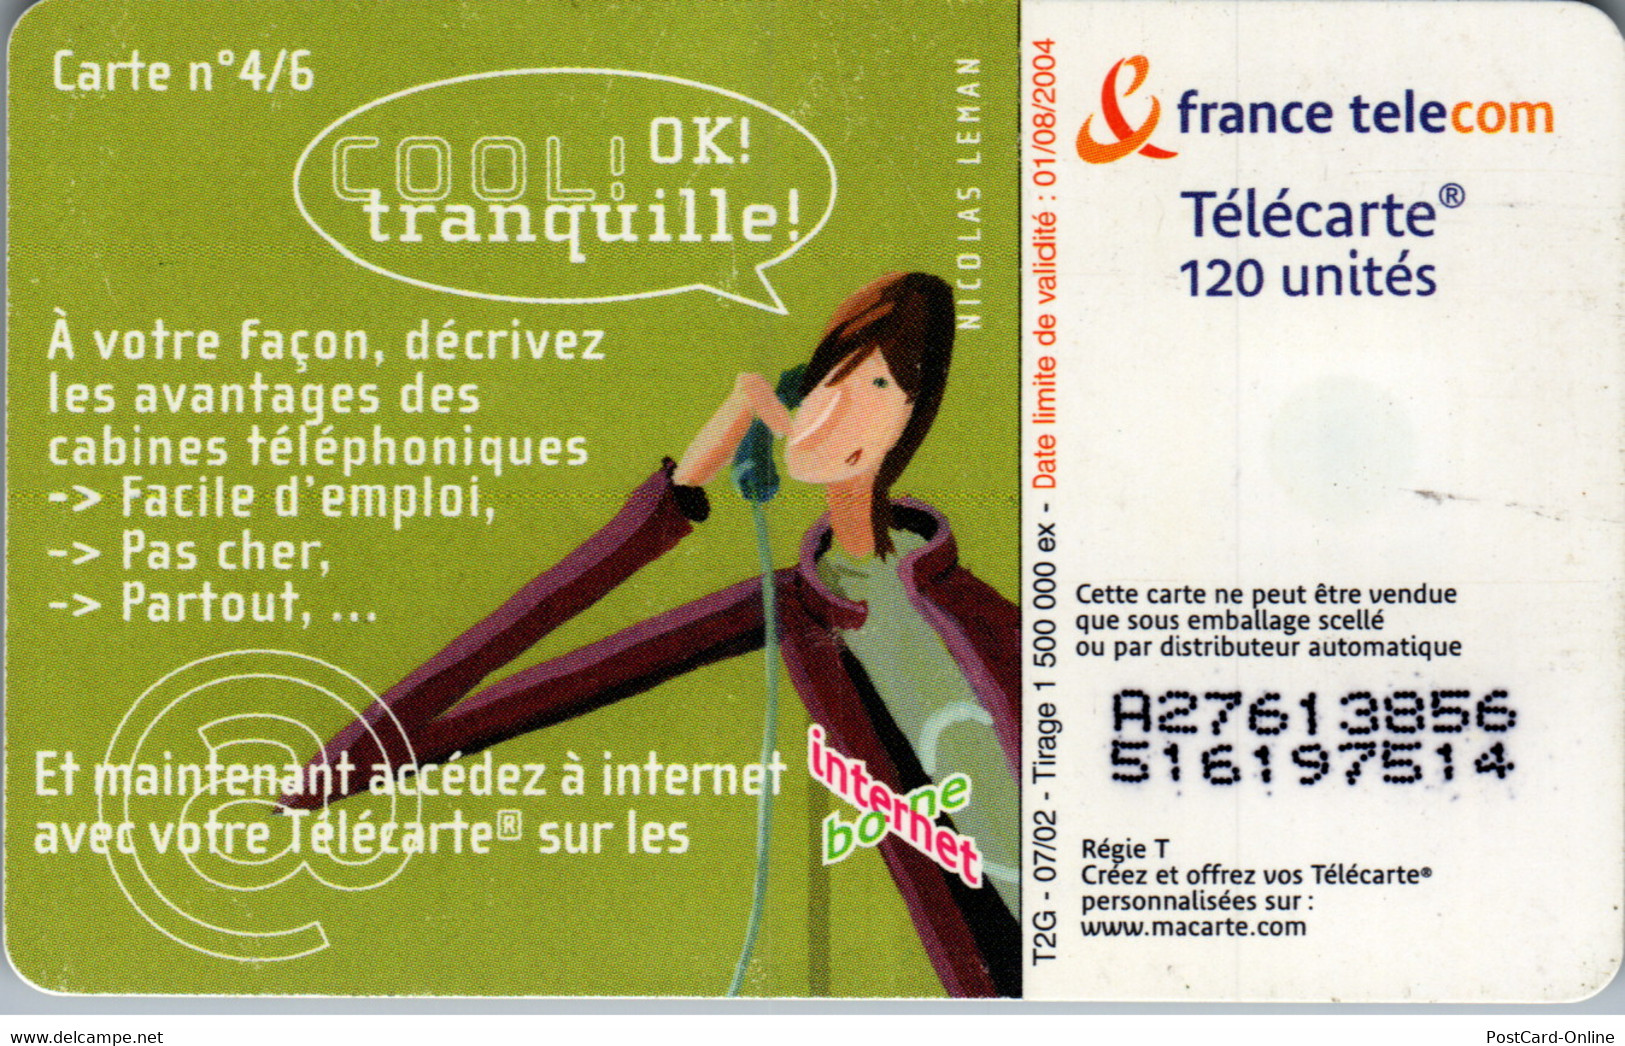 19308 - Frankreich - Motiv Carte N° 4/6 - 2002